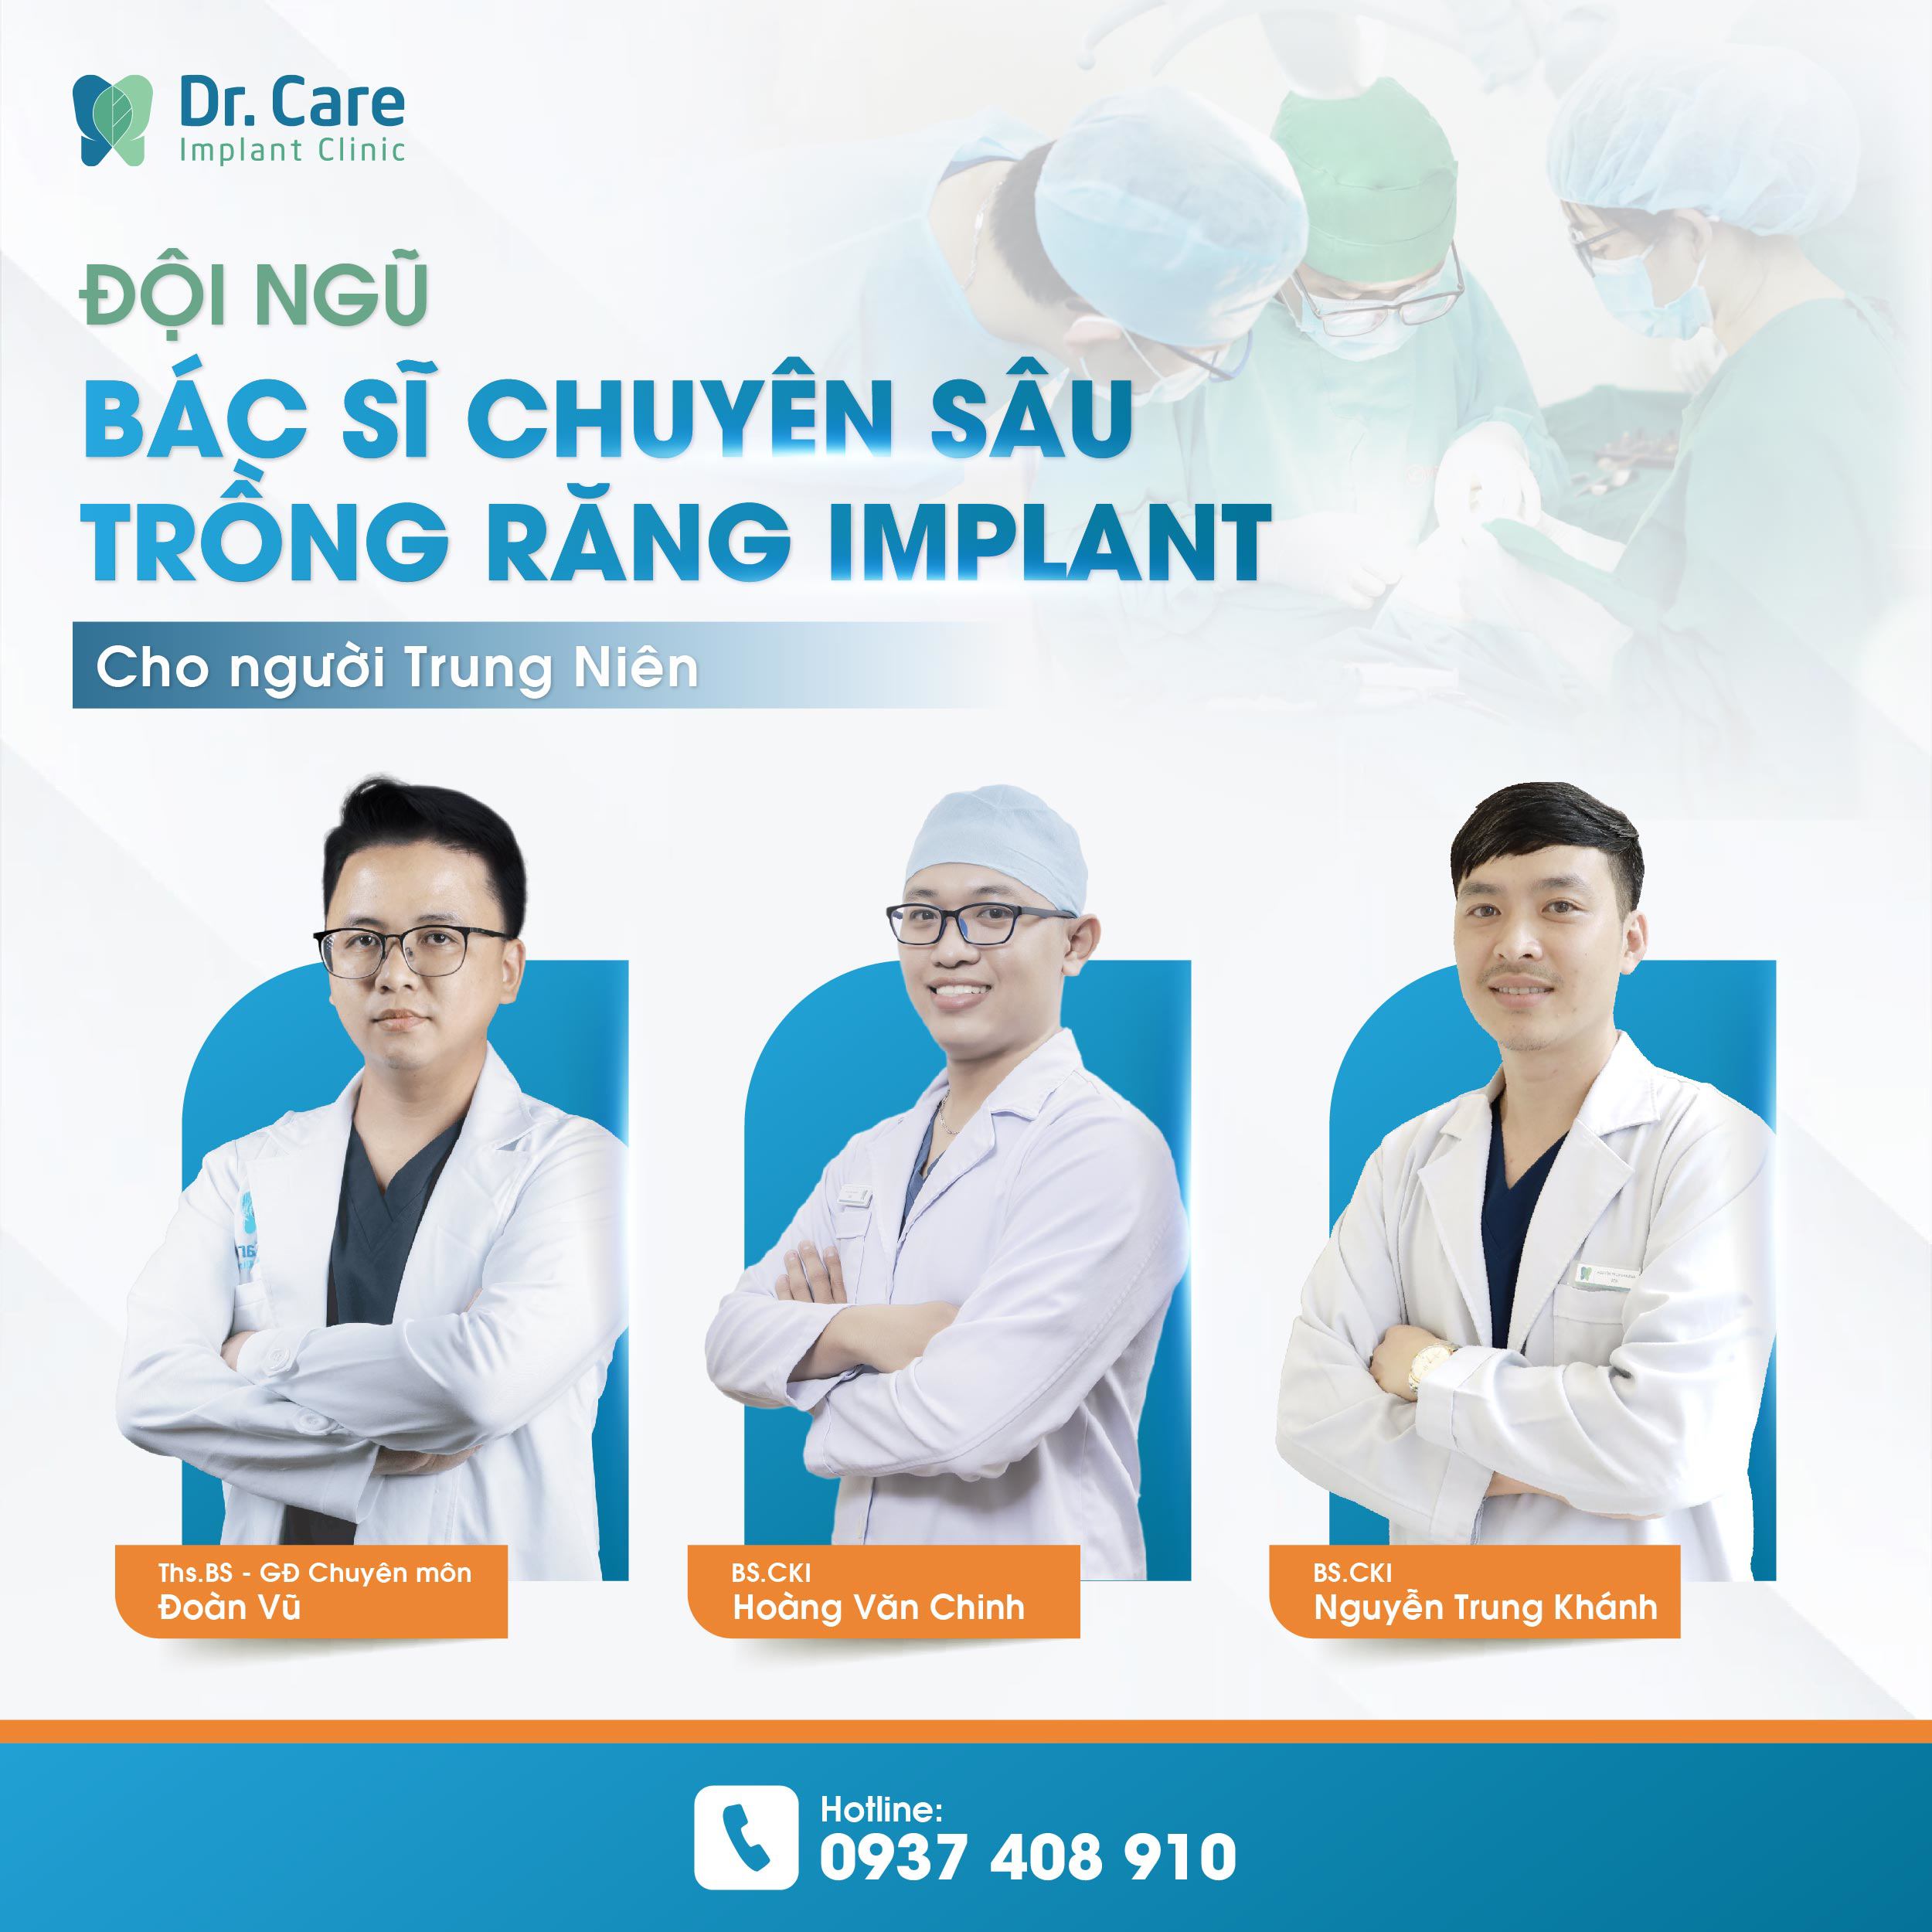 Dr. Care Implant Clinic - Địa chỉ trồng răng Implant uy tín tại TP.HCM - 2